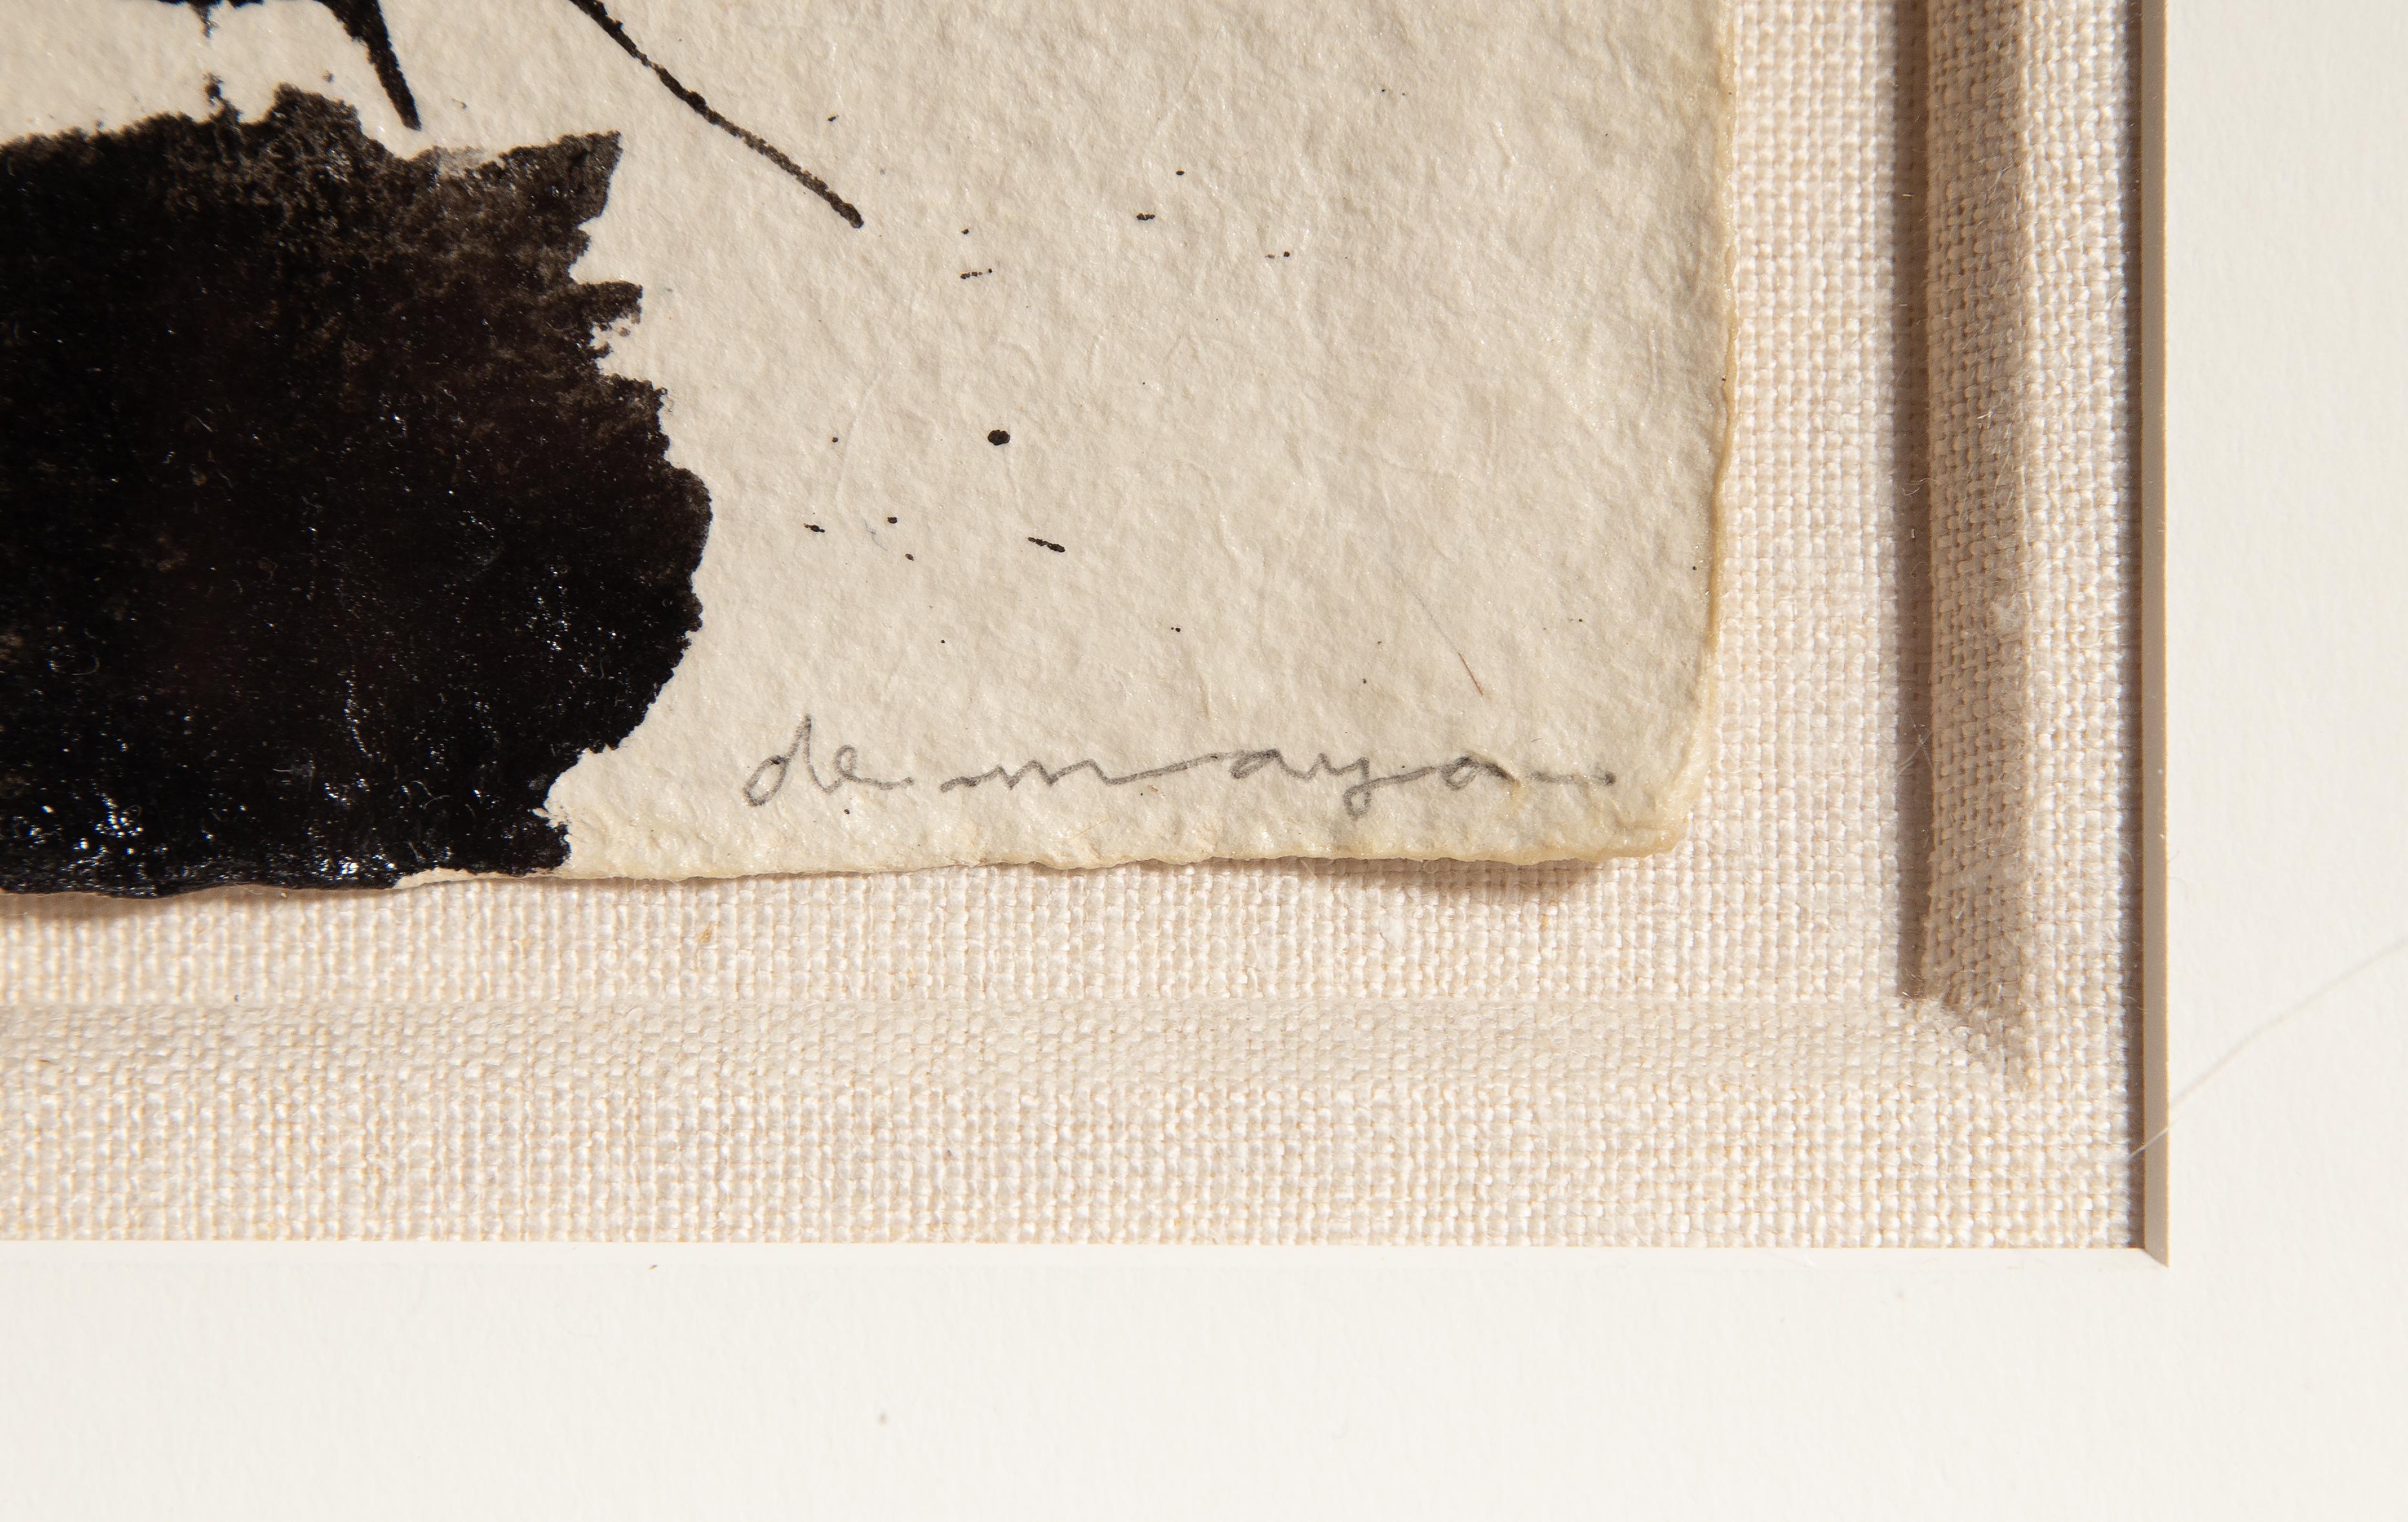 Vieh
Louis De Mayo, Amerikaner (1926-2016)
Tusche auf Papier, rechts unten mit Bleistift signiert
Größe: 8,25 x 6,25 Zoll (20,96 x 15,88 cm)
Rahmengröße: 16,25 x 14,25 Zoll